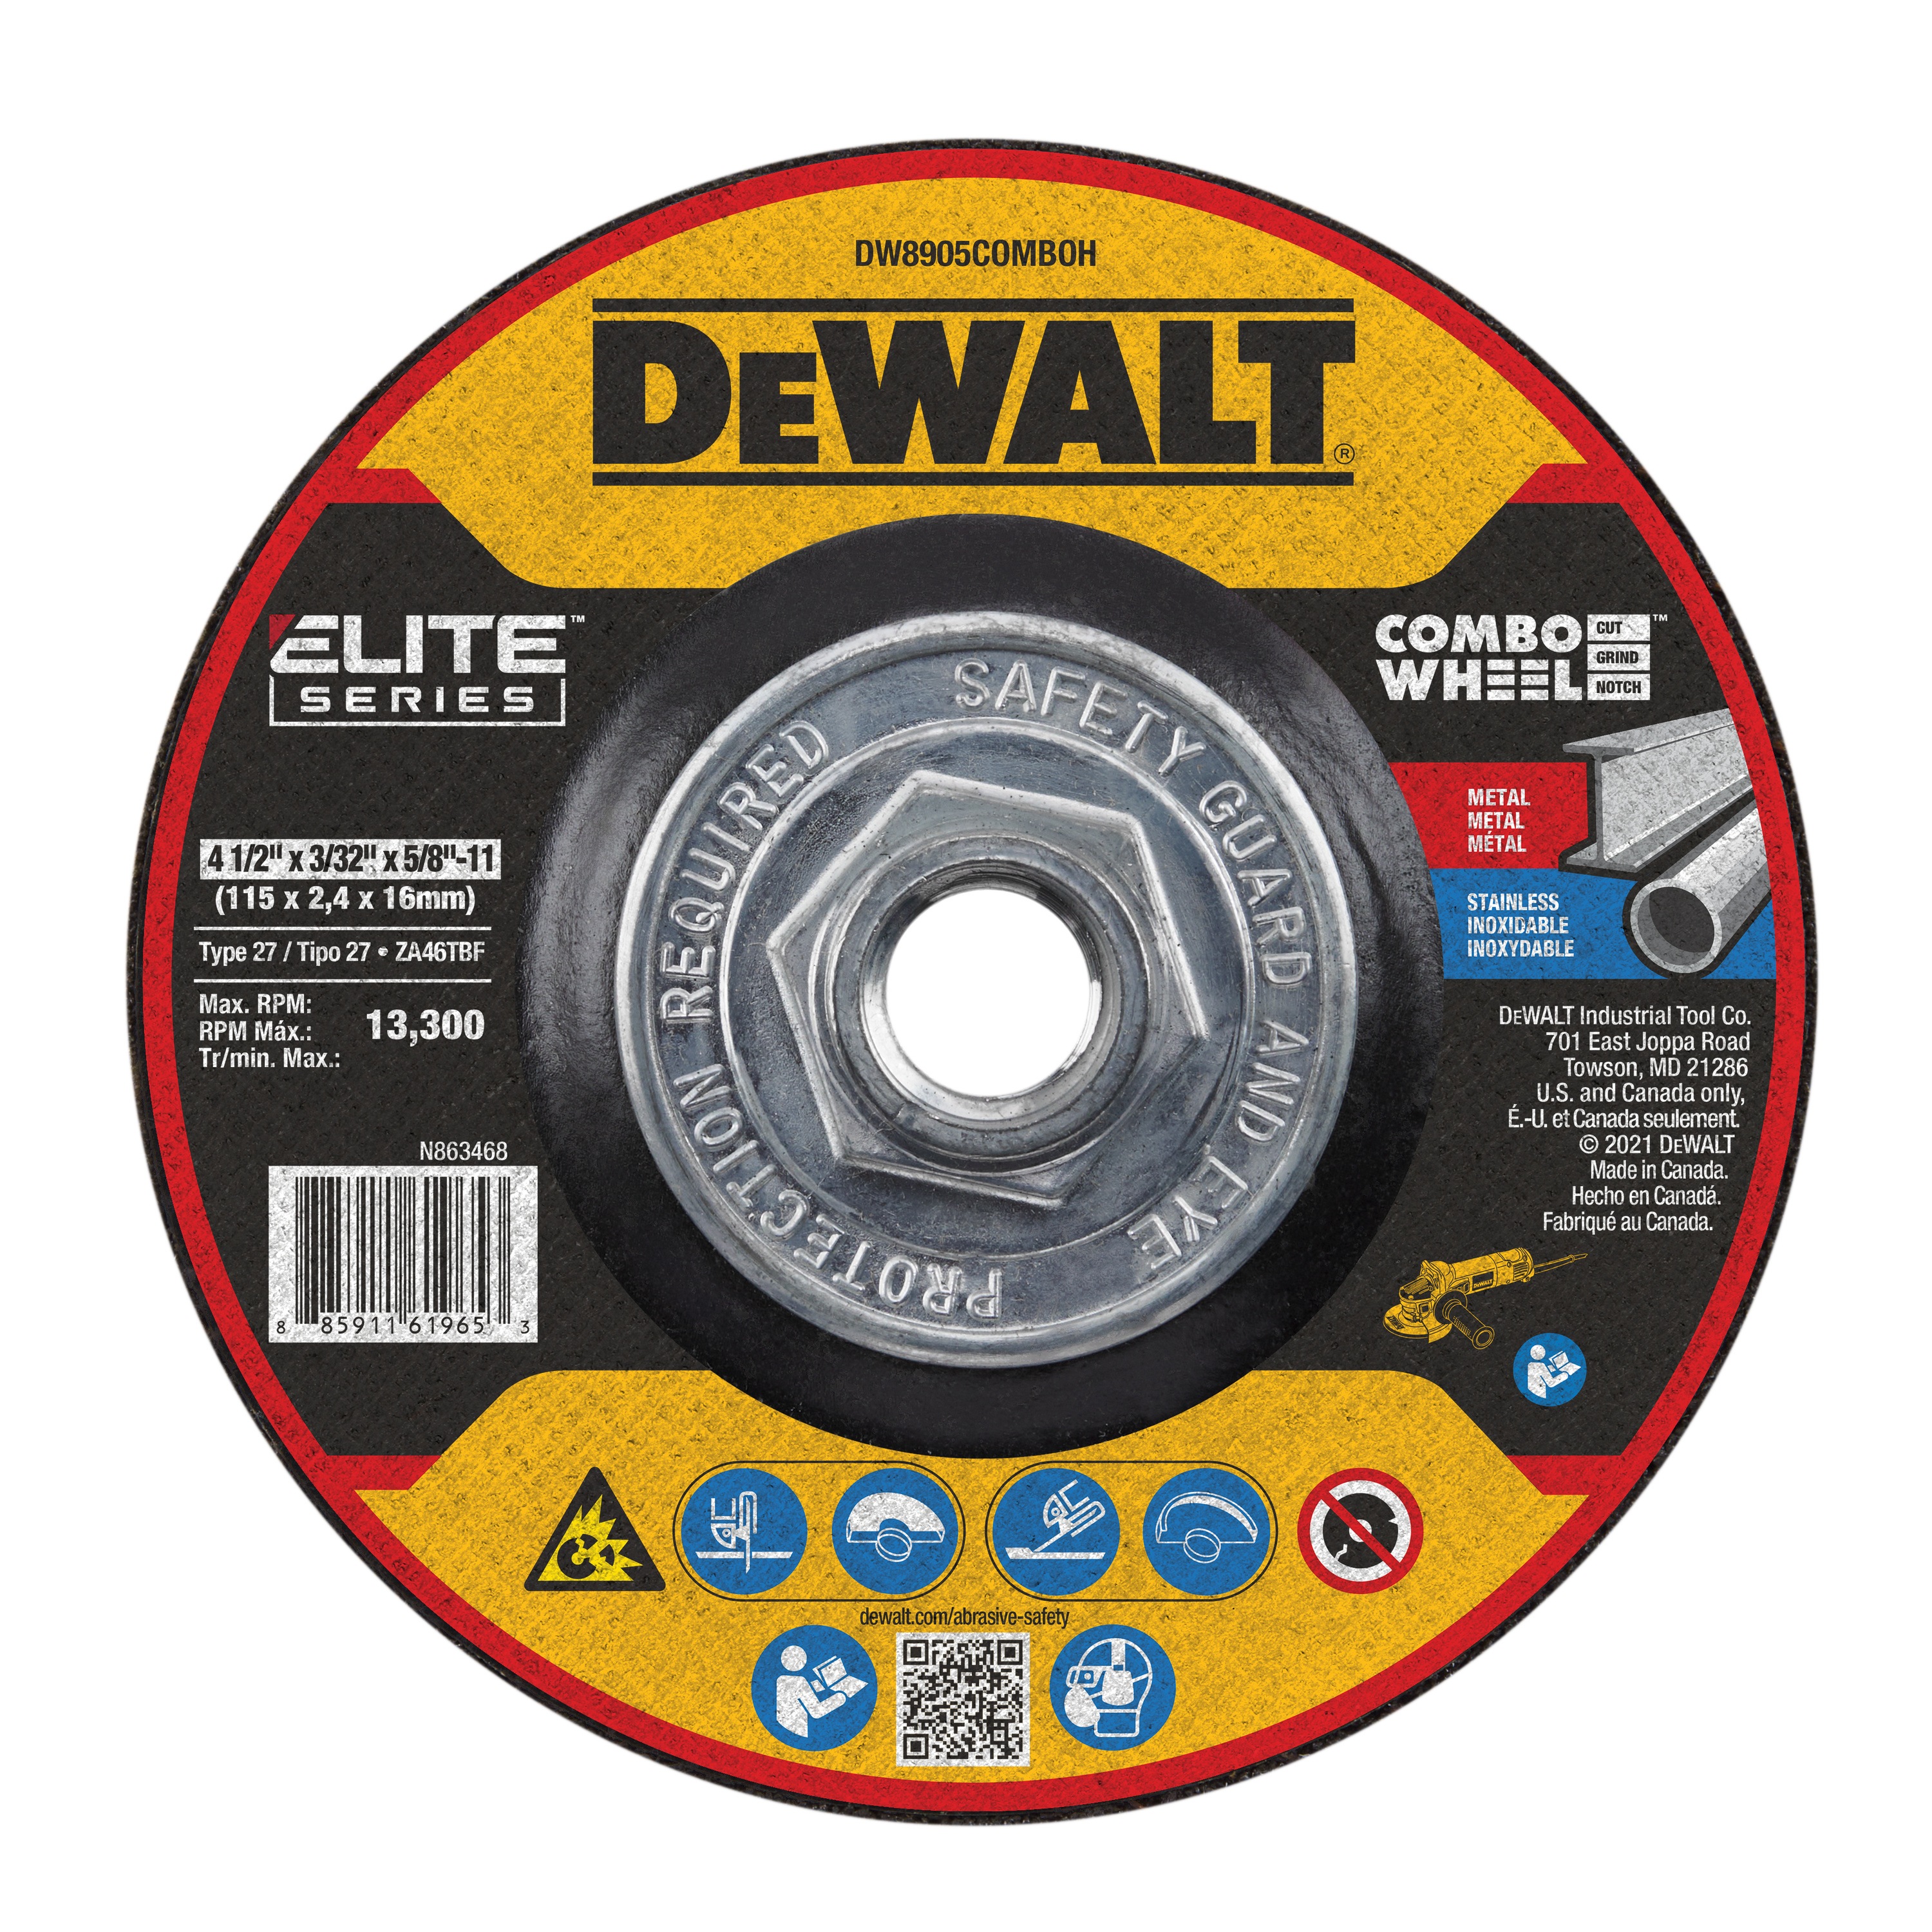 DEWALT - DEWALT ELITE SERIES  Combo  Wheels - DW8905COMBOH